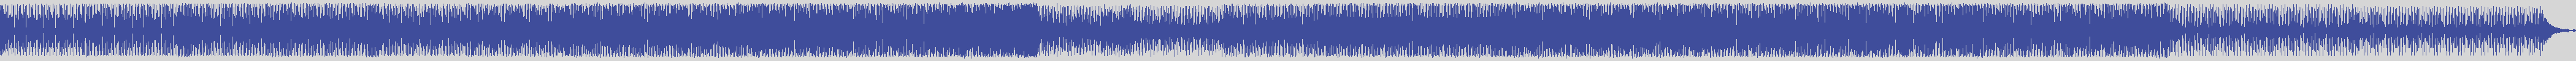 noclouds_chillout [NOC039] Dj Moana - Tromso [Original Mix] audio wave form